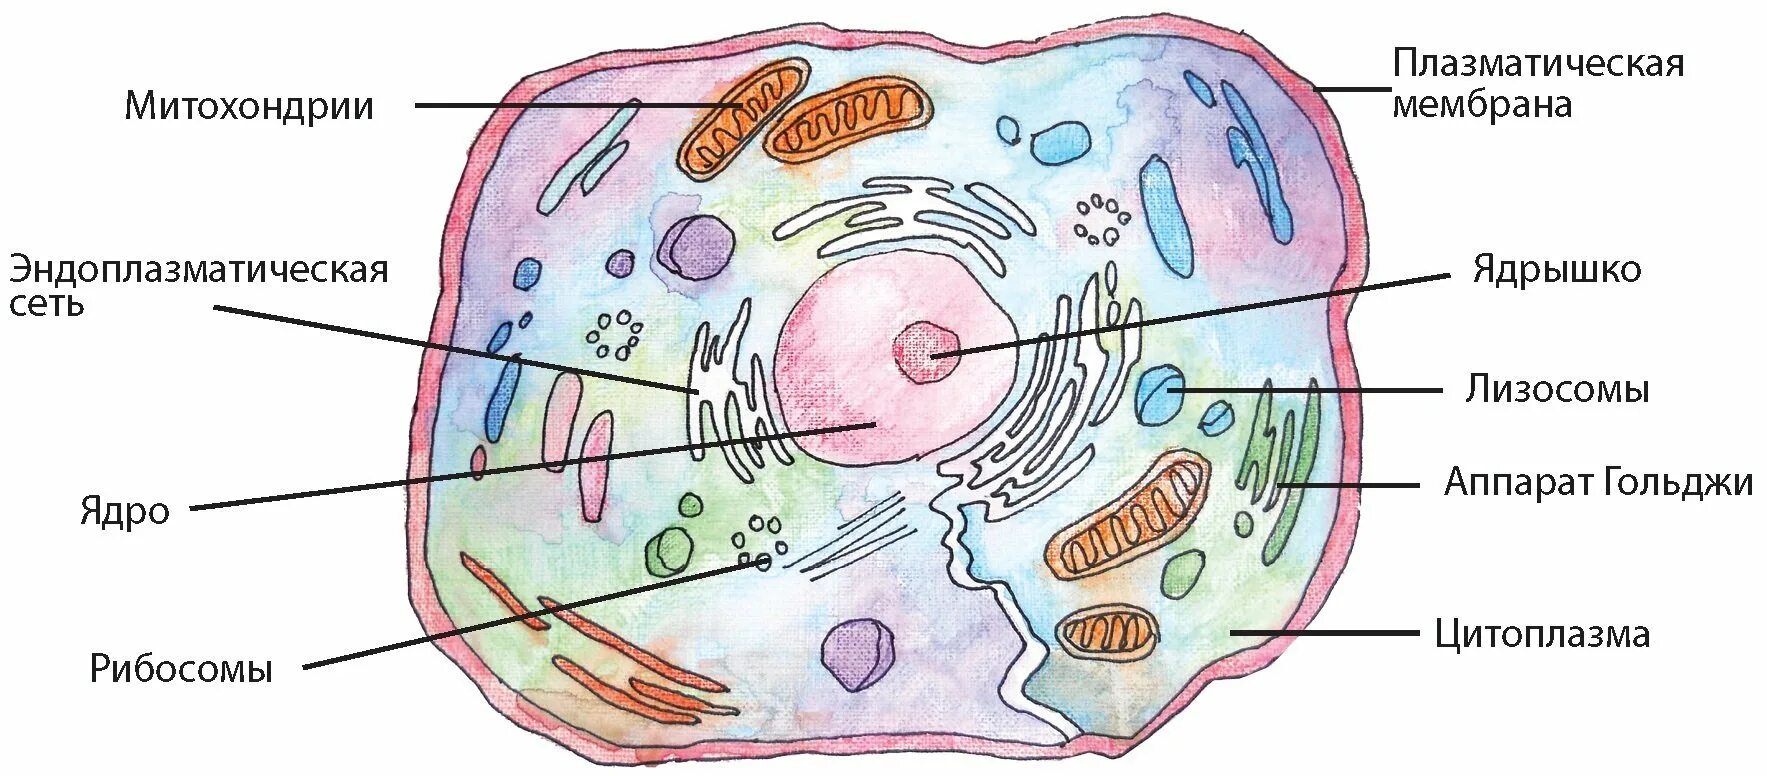 Строение клетки мембрана цитоплазма органоиды ядро. Клеточный центр цитоплазма митохондрии. Схема строения эукариотической клетки. Схематическое строение эукариотической клетки. Лизосомы класс